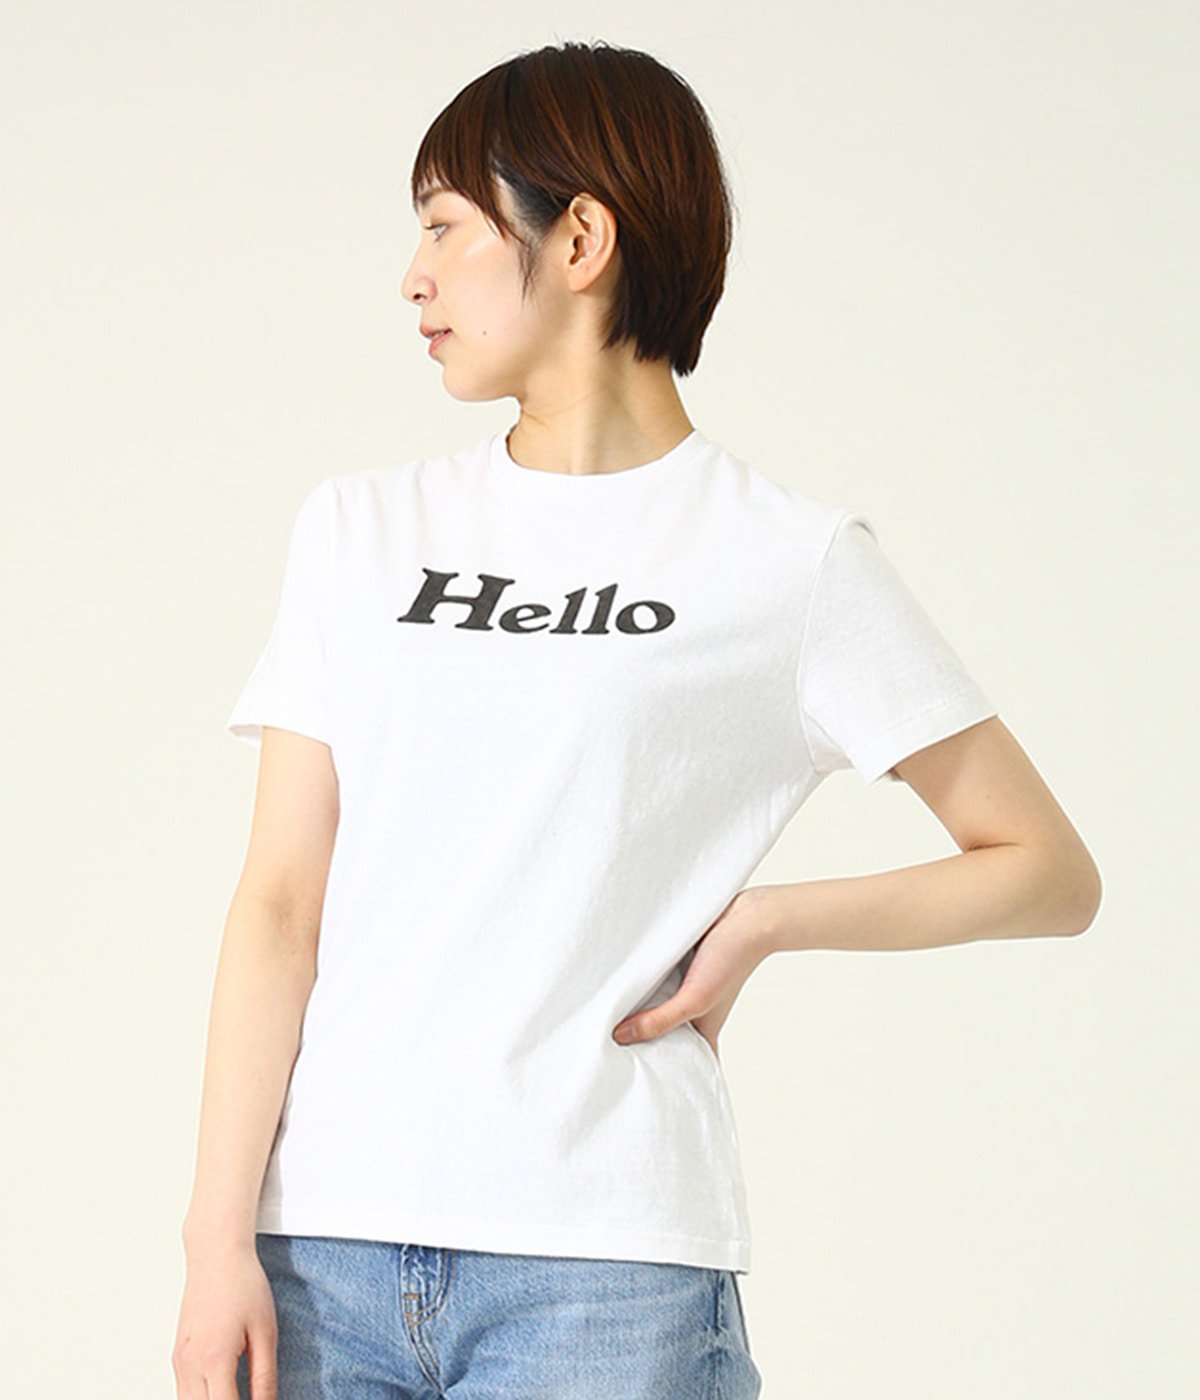 マディソンブルー Hello ロゴ tシャツ 白 01 美品 - www.nih3t3.com